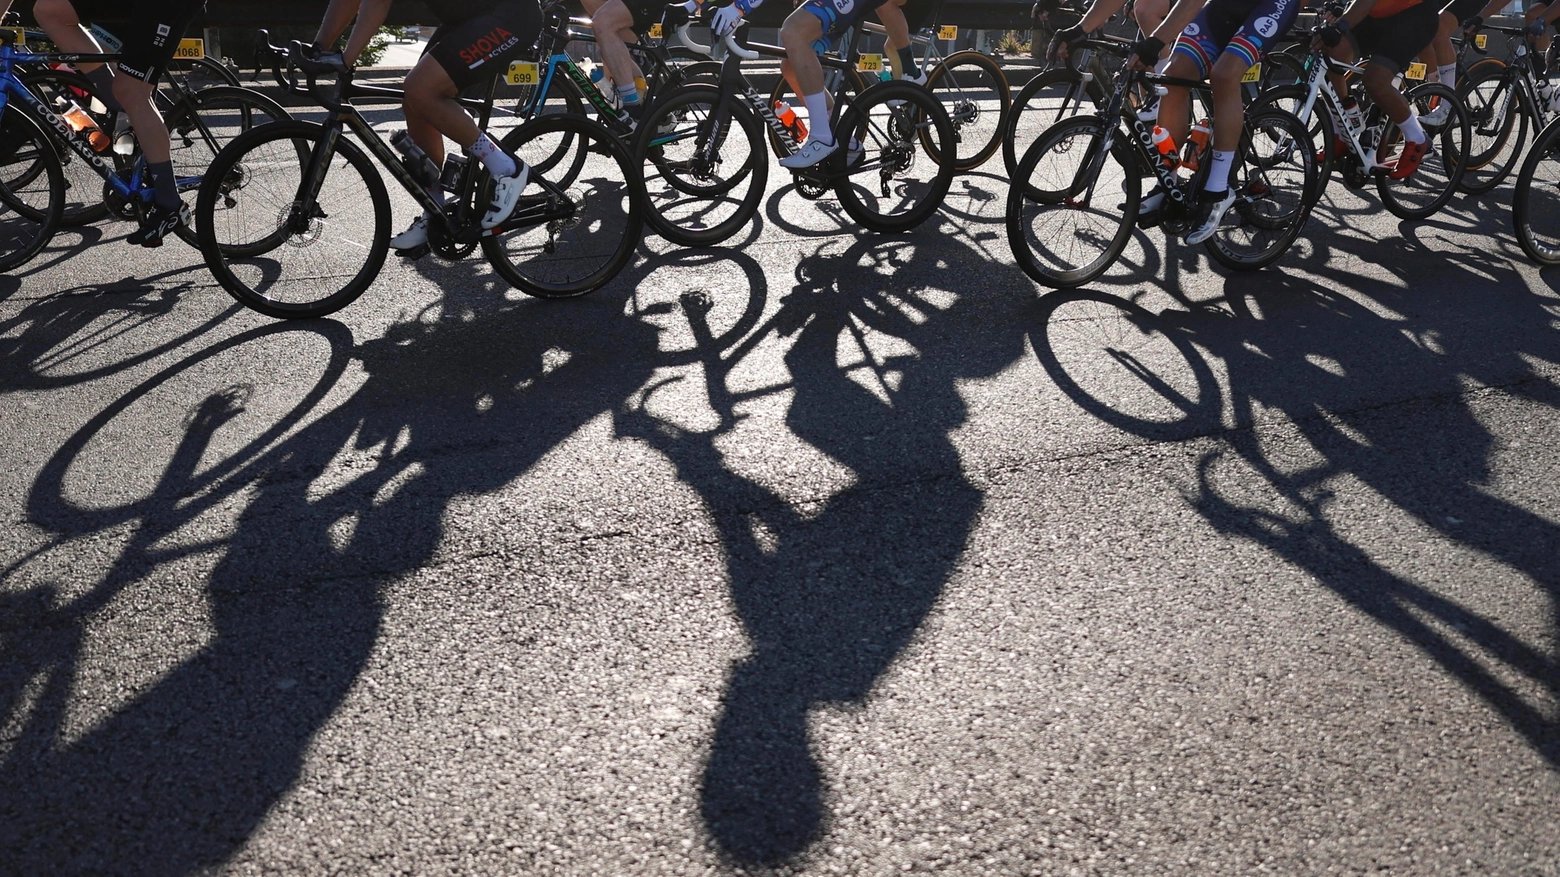 La nuova frontiera del doping nel ciclismo (Ansa)